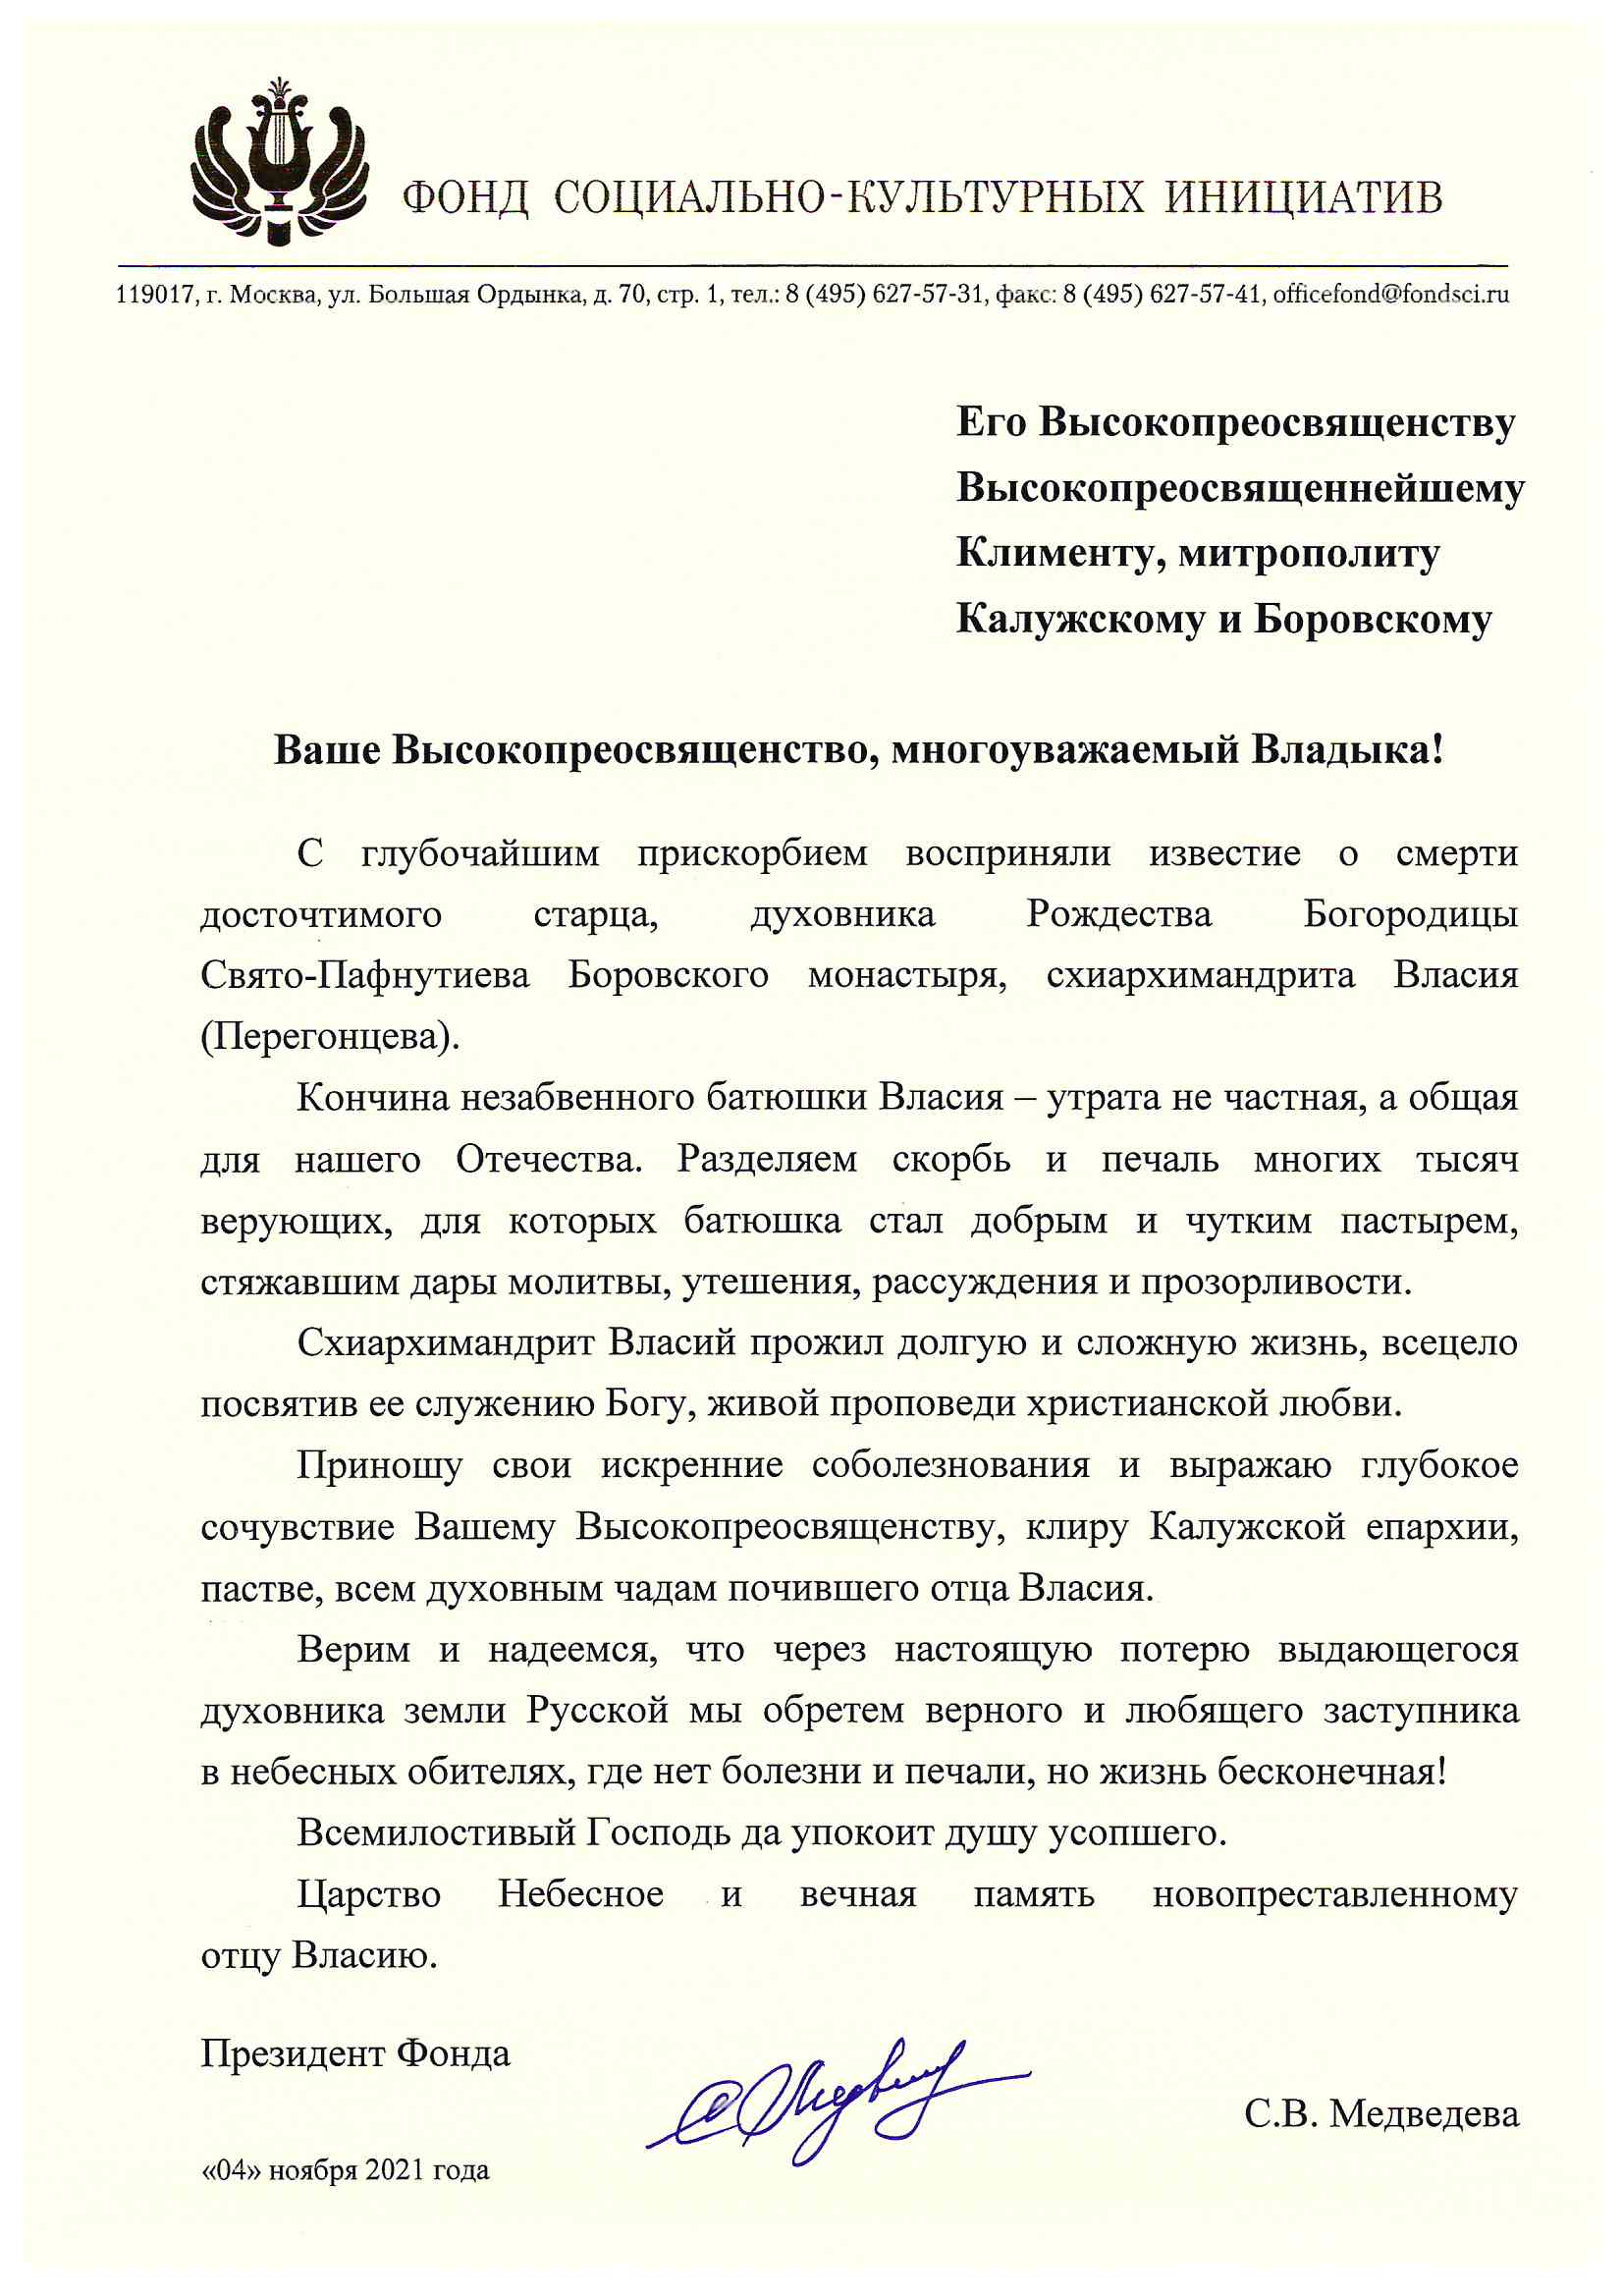 Соболезнования Президента Фонда социально-культурных инициатив С.В. Медведевой в связи в кончиной схиархимандрита Власия